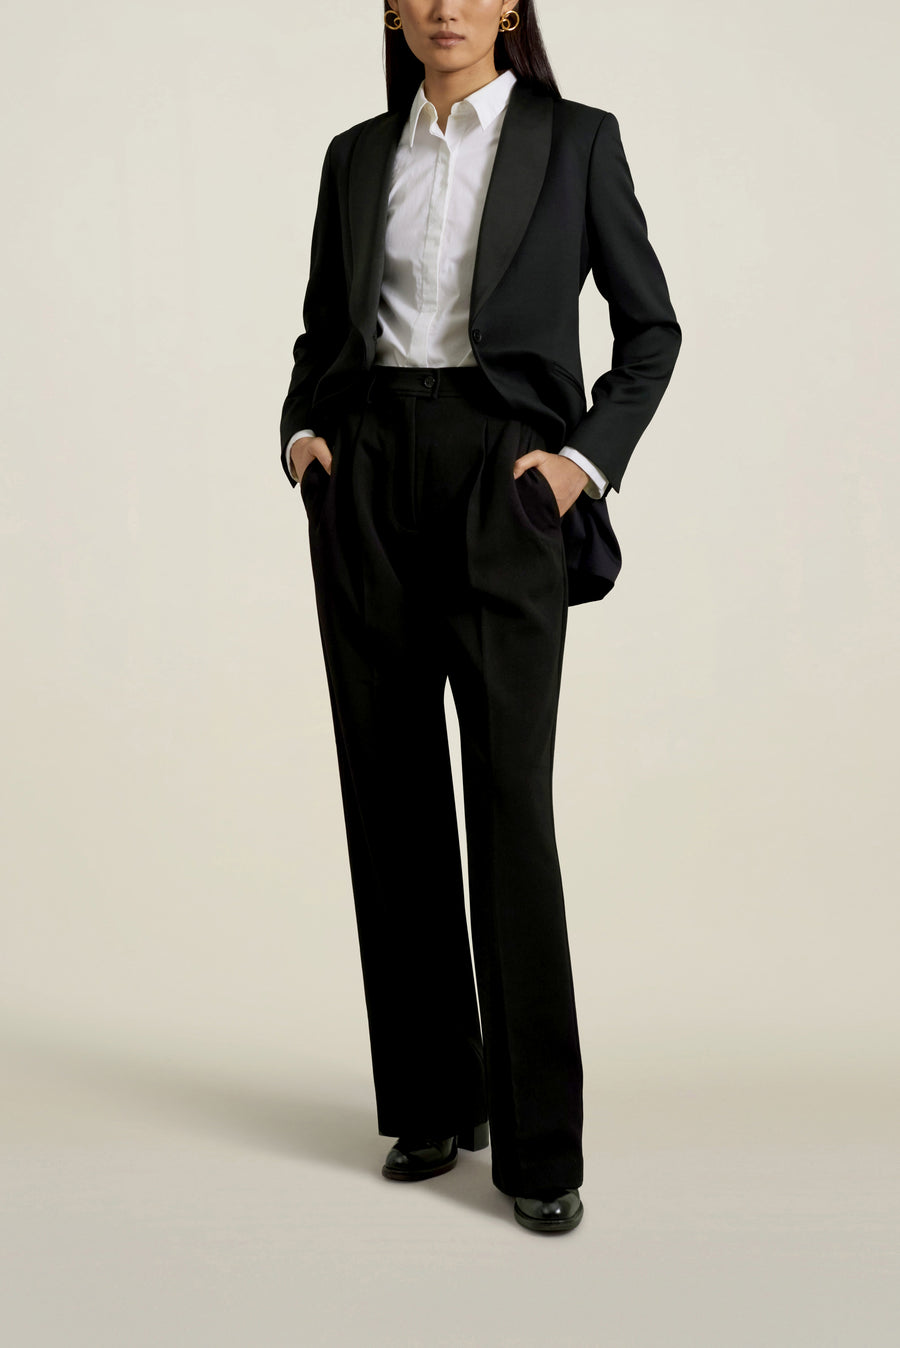 Mia Shawl Collar Blazer in Tuxedo